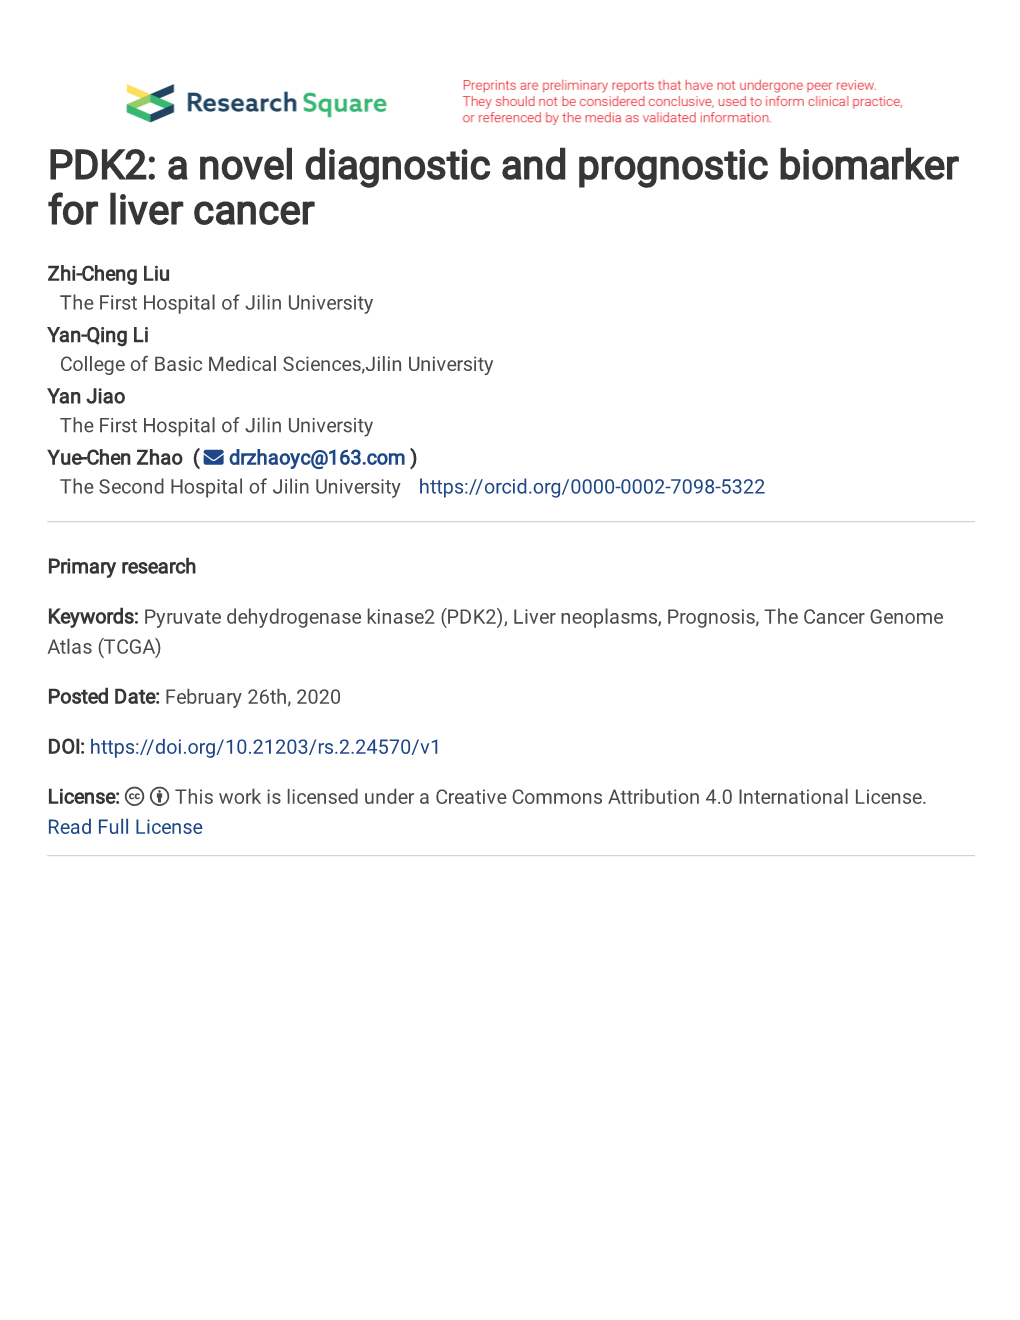 PDK2: a Novel Diagnostic and Prognostic Biomarker for Liver Cancer